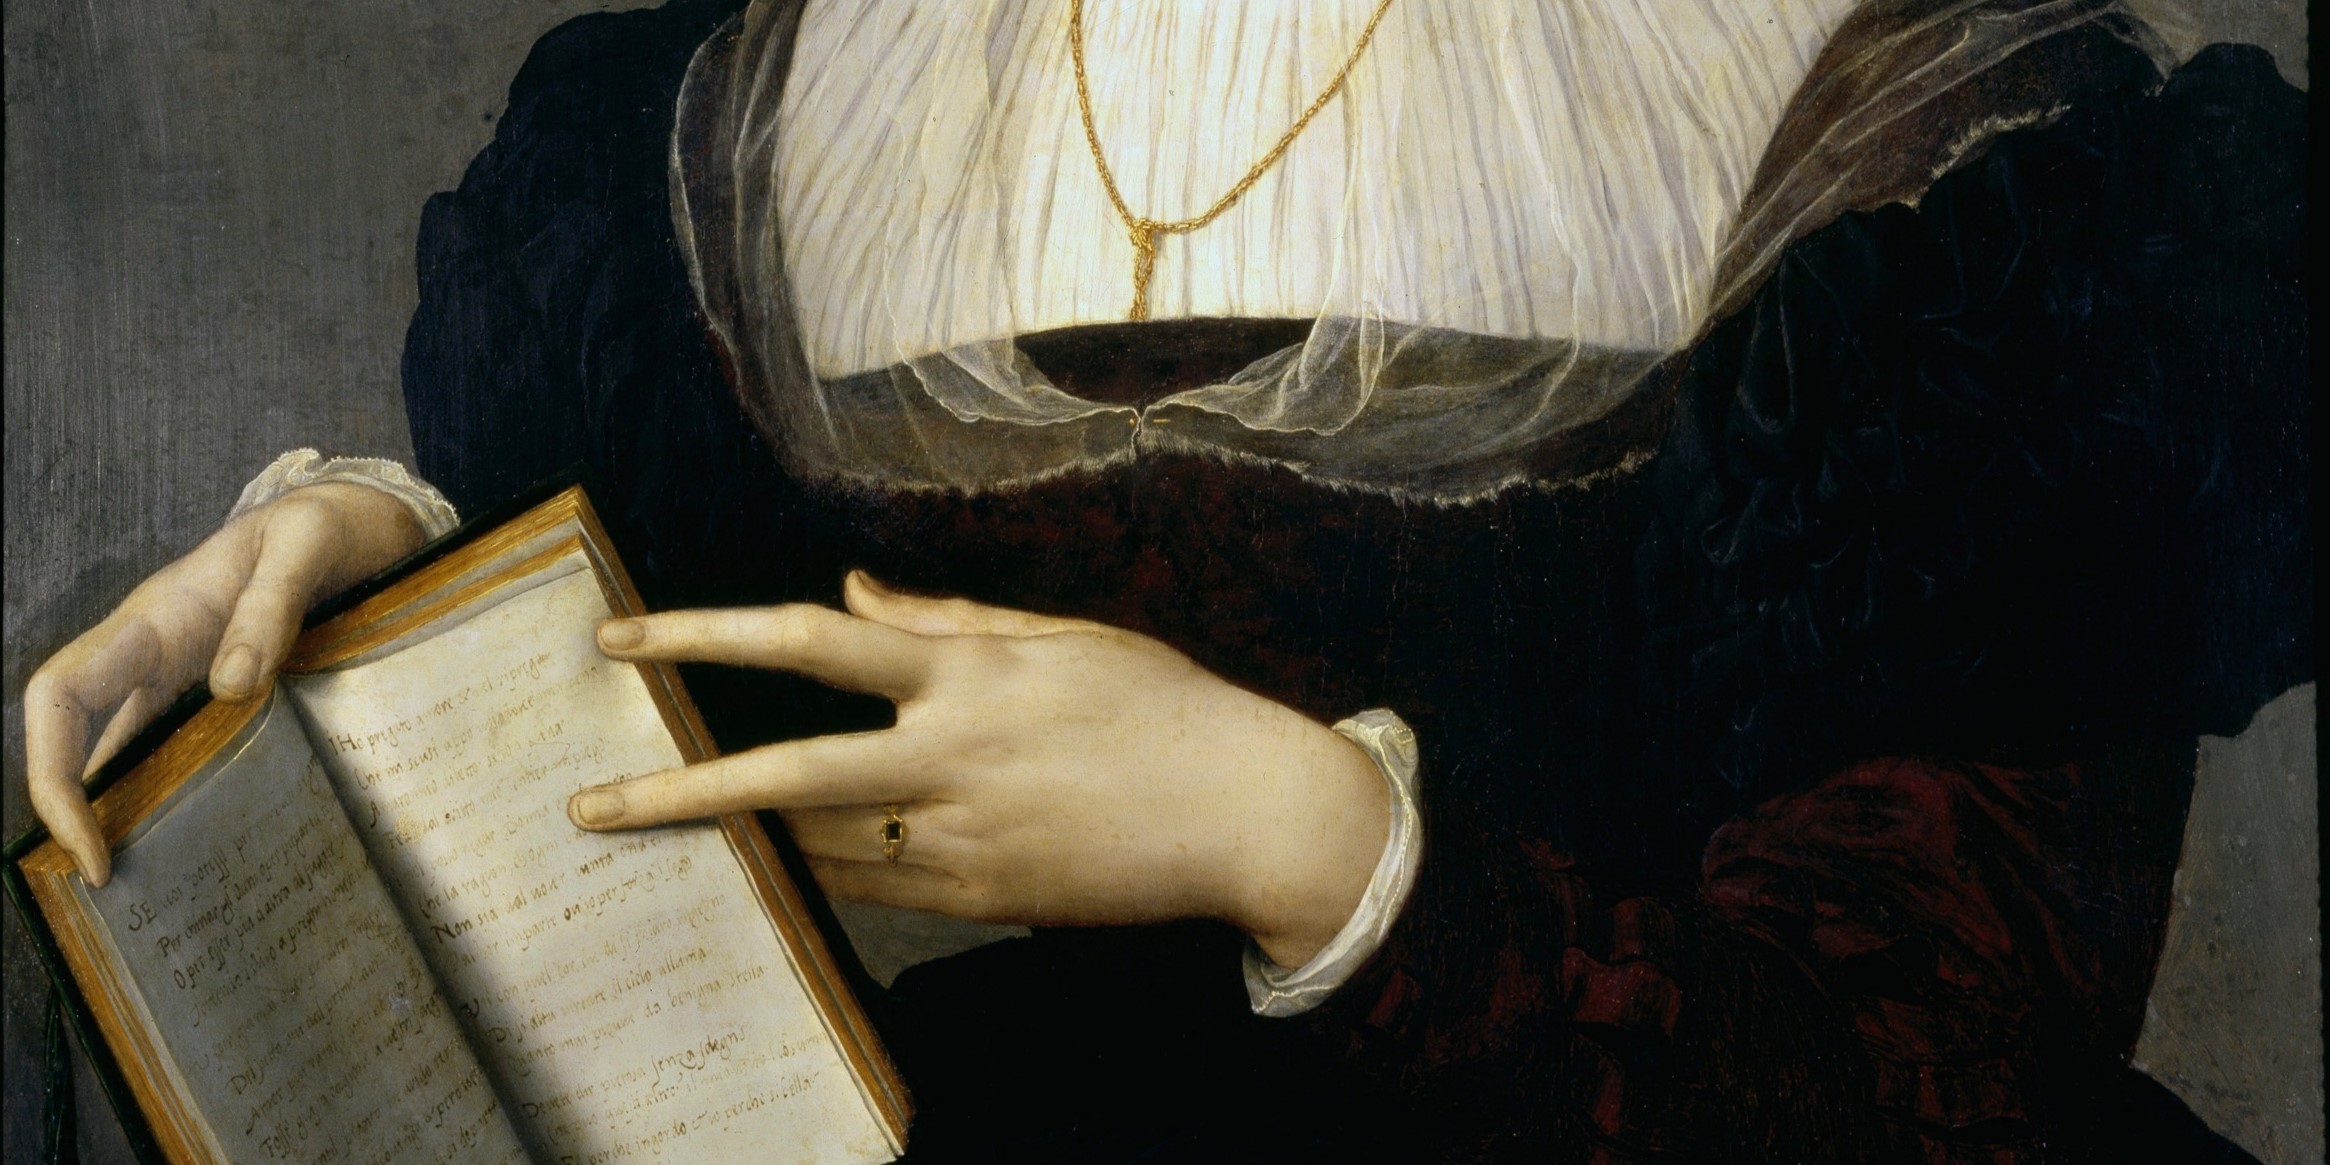 Dettaglio tratto dal dipinto di Laura Battiferro realizzato da Agnolo Bronzino. Si notano, in primo piano, le mani della letterata tenere un libro e indicare in particolare una pagina dello stesso